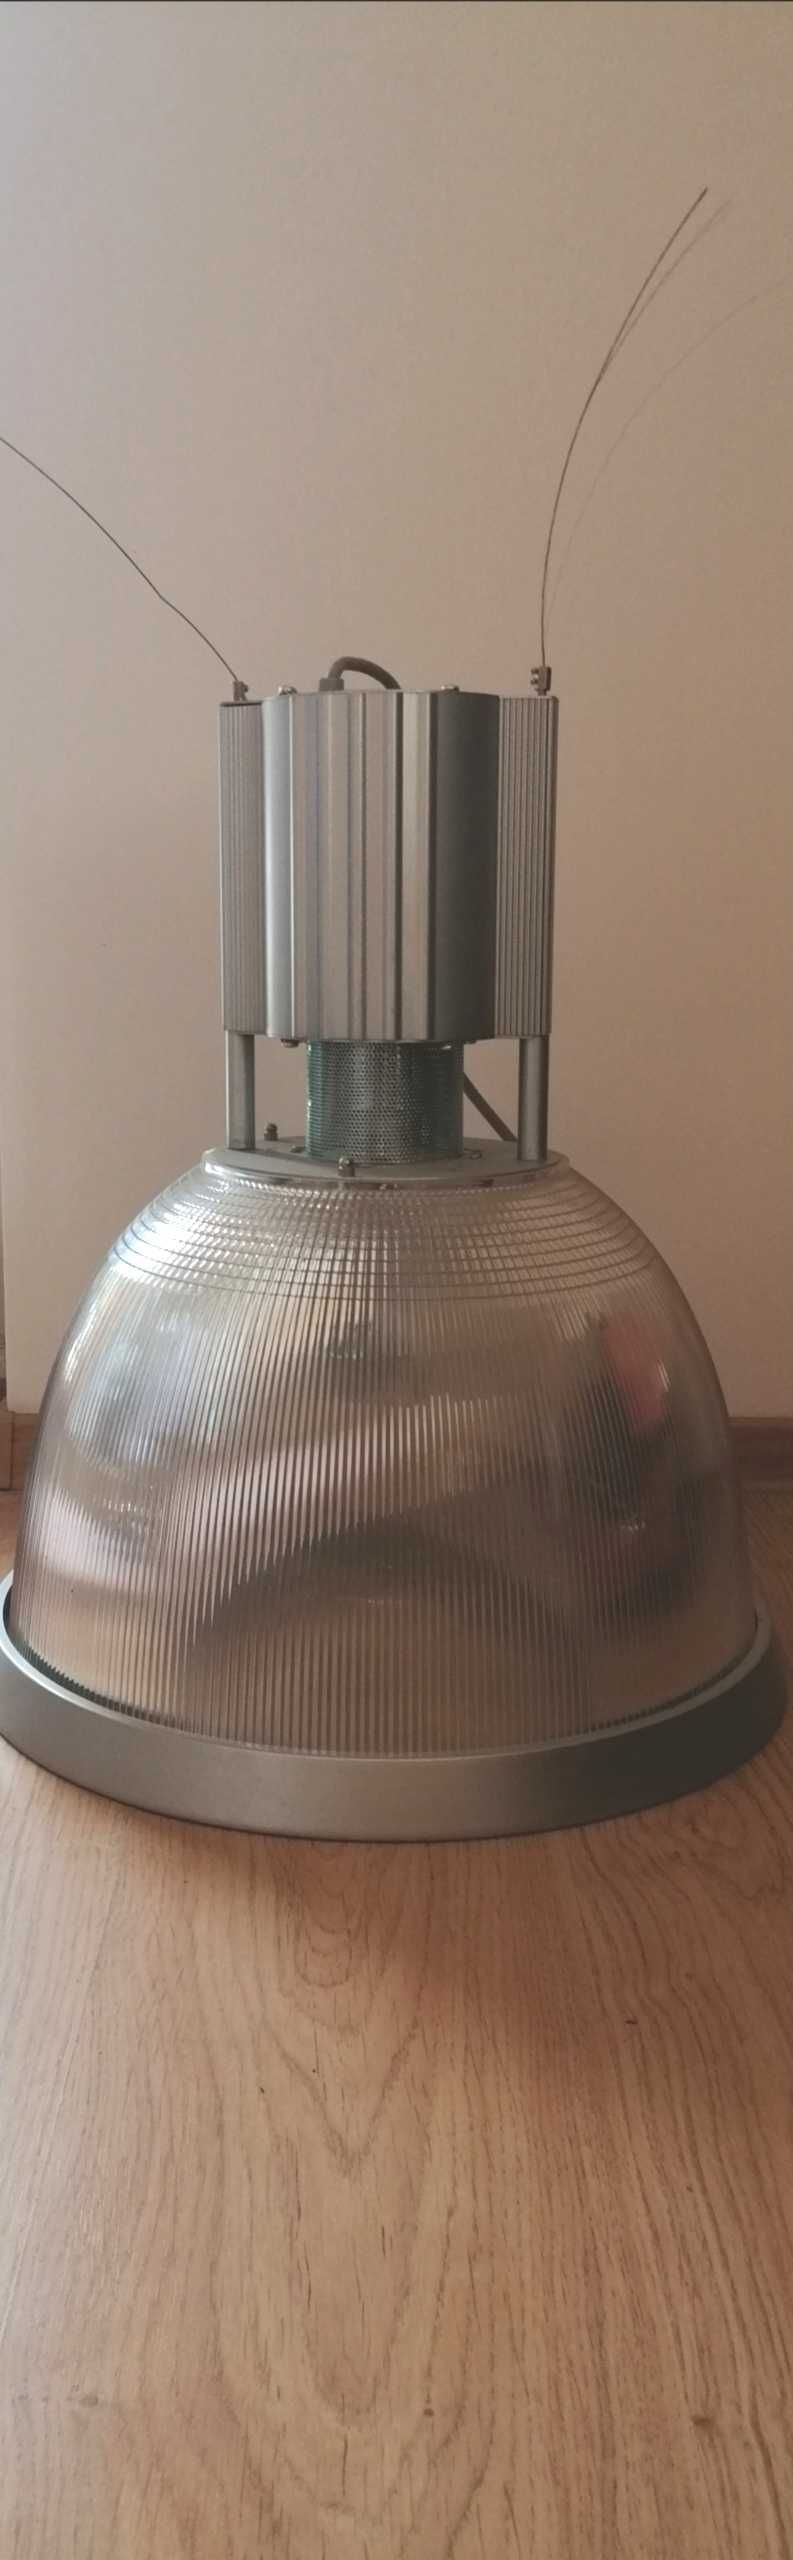 Lampa loft przemysłowa